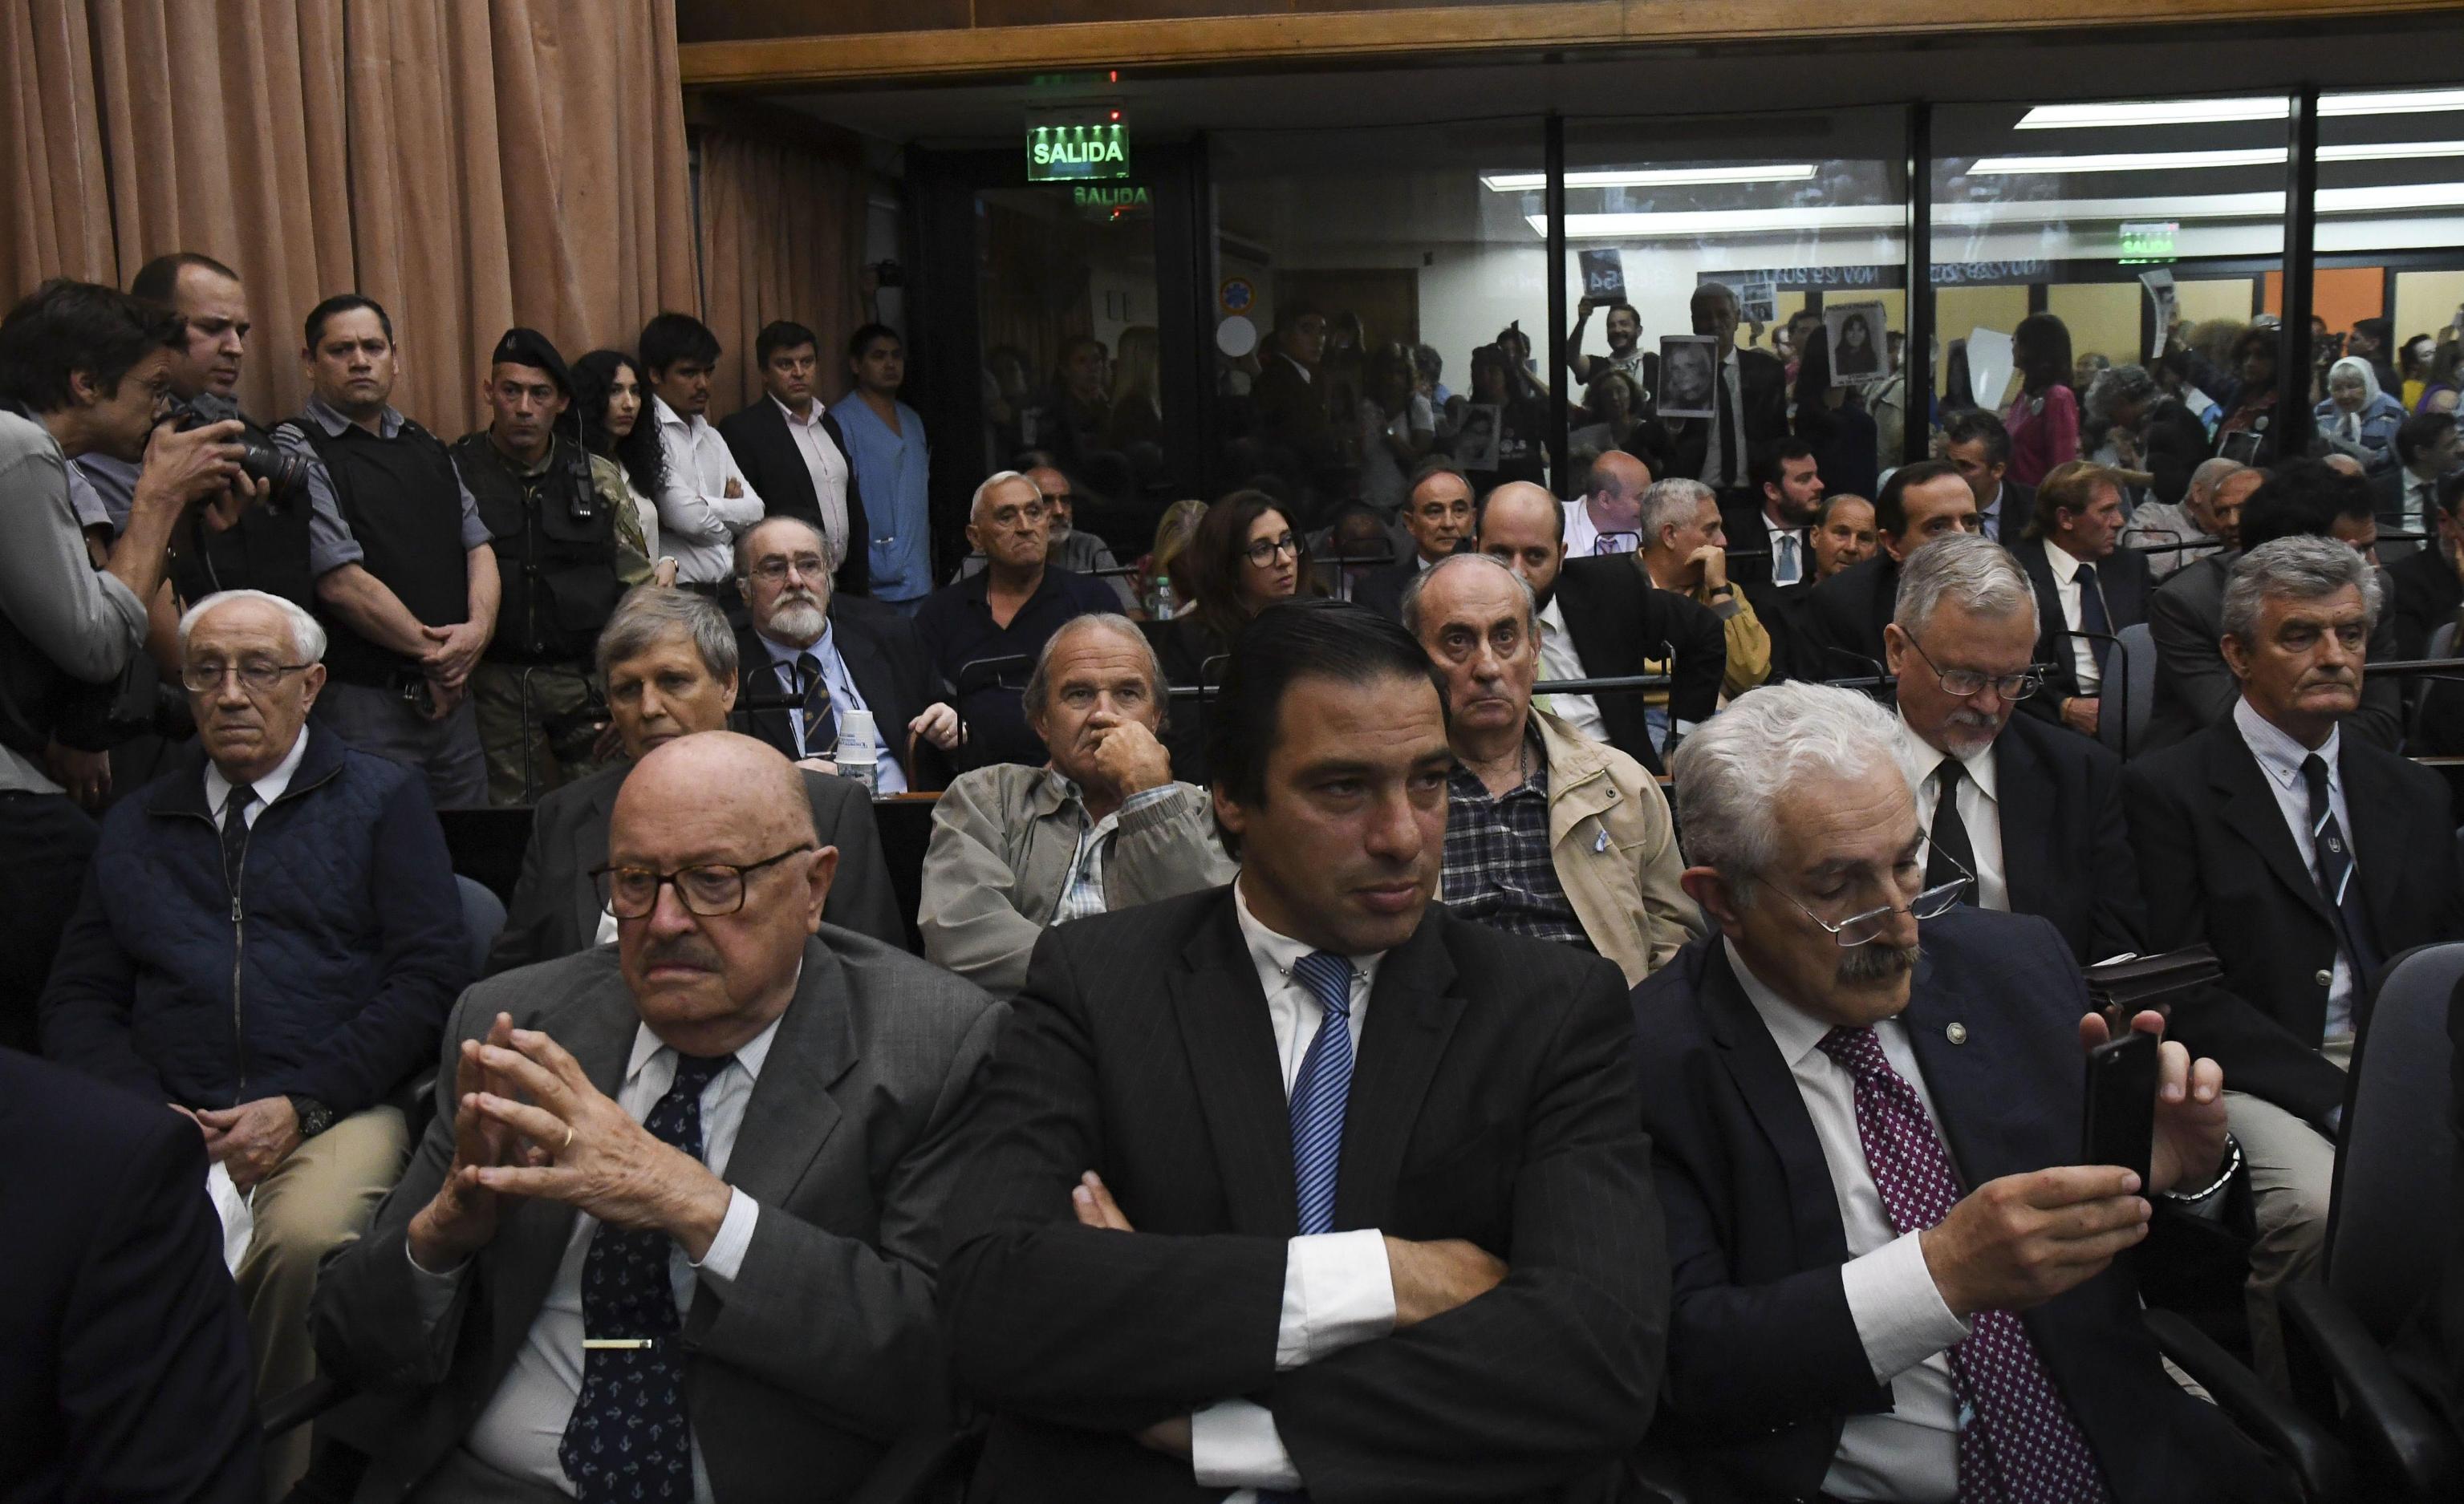 Gli ex ufficiali militari, Jorge Eduardo Acosta e Alfredo Astiz (entrambi a sinistra in seconda fila), ascoltano la lettura della sentenza presso le corti federali di Buenos Aires